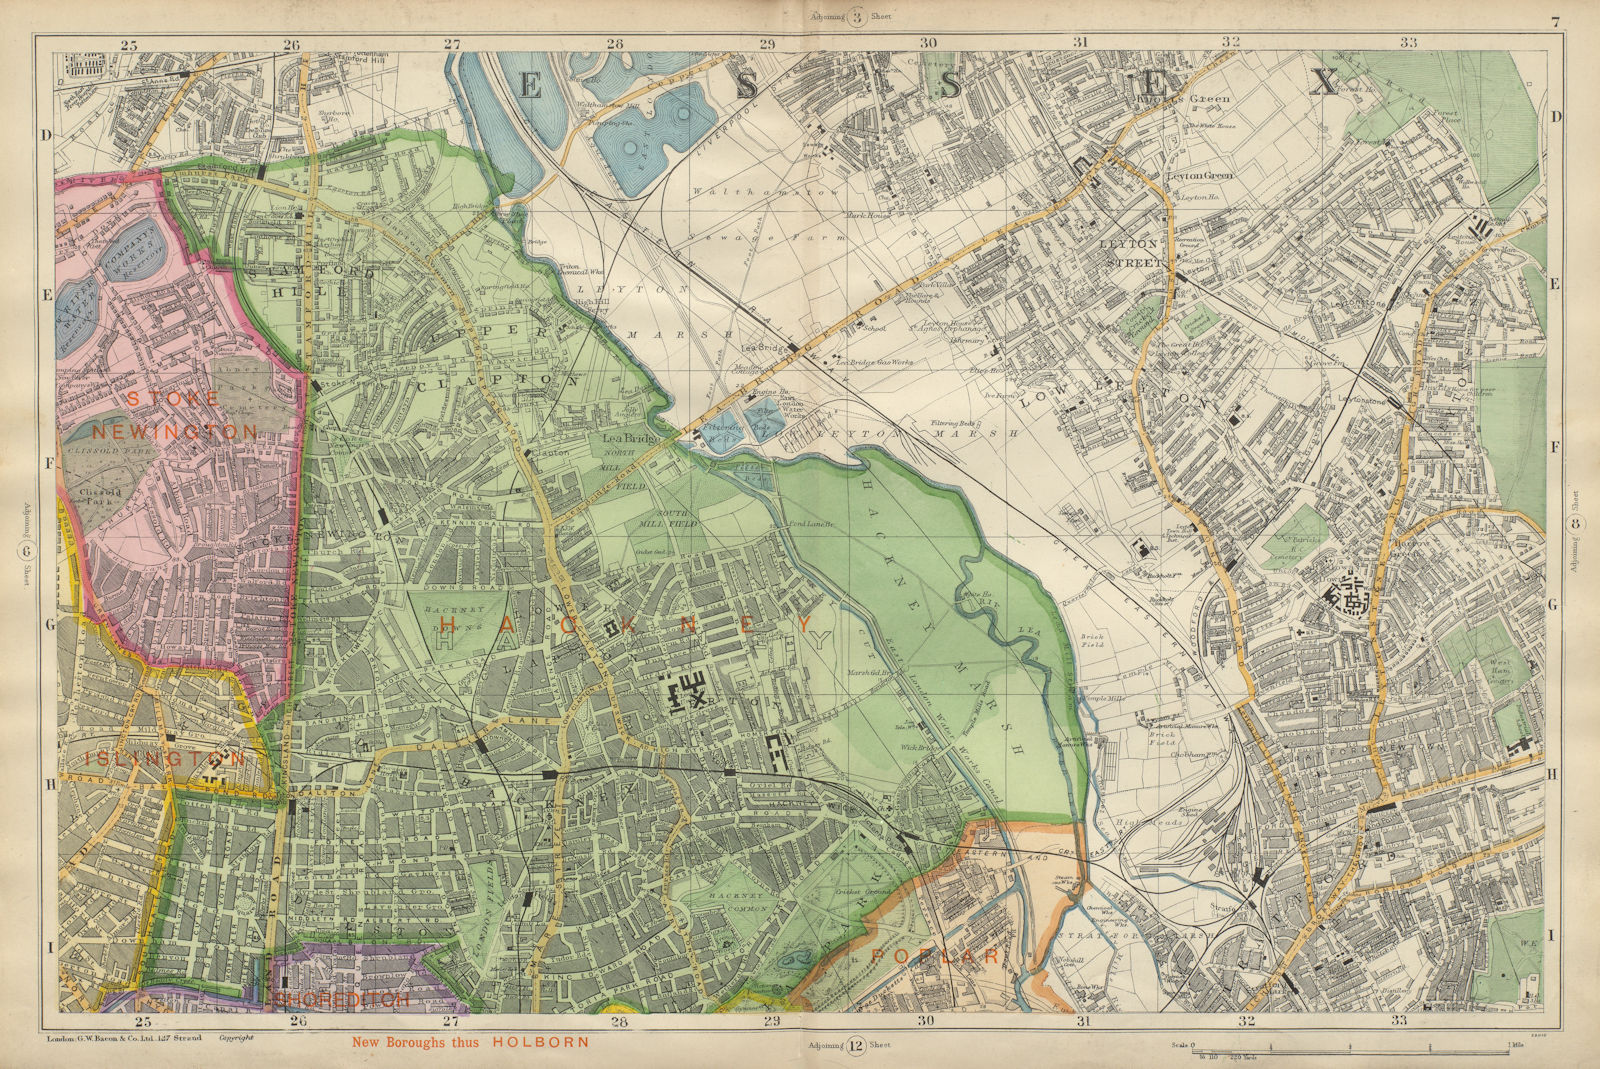 HACKNEY STRATFORD LEYTON/STONE STOKE NEWINGTON Clapton Dalston BACON 1900 map